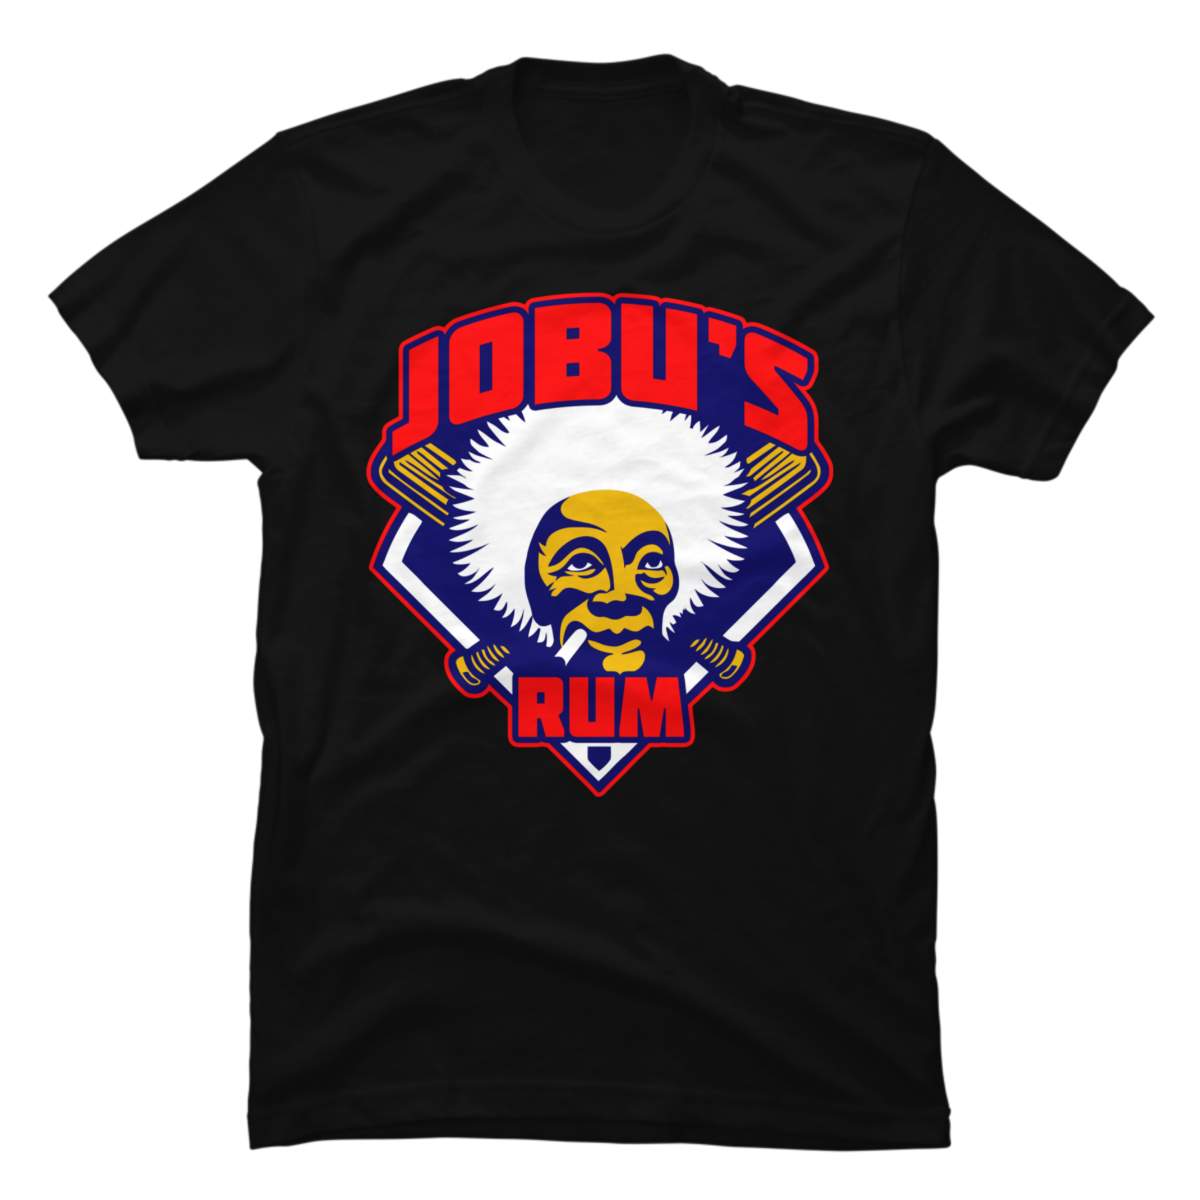 jobu's rum shirt